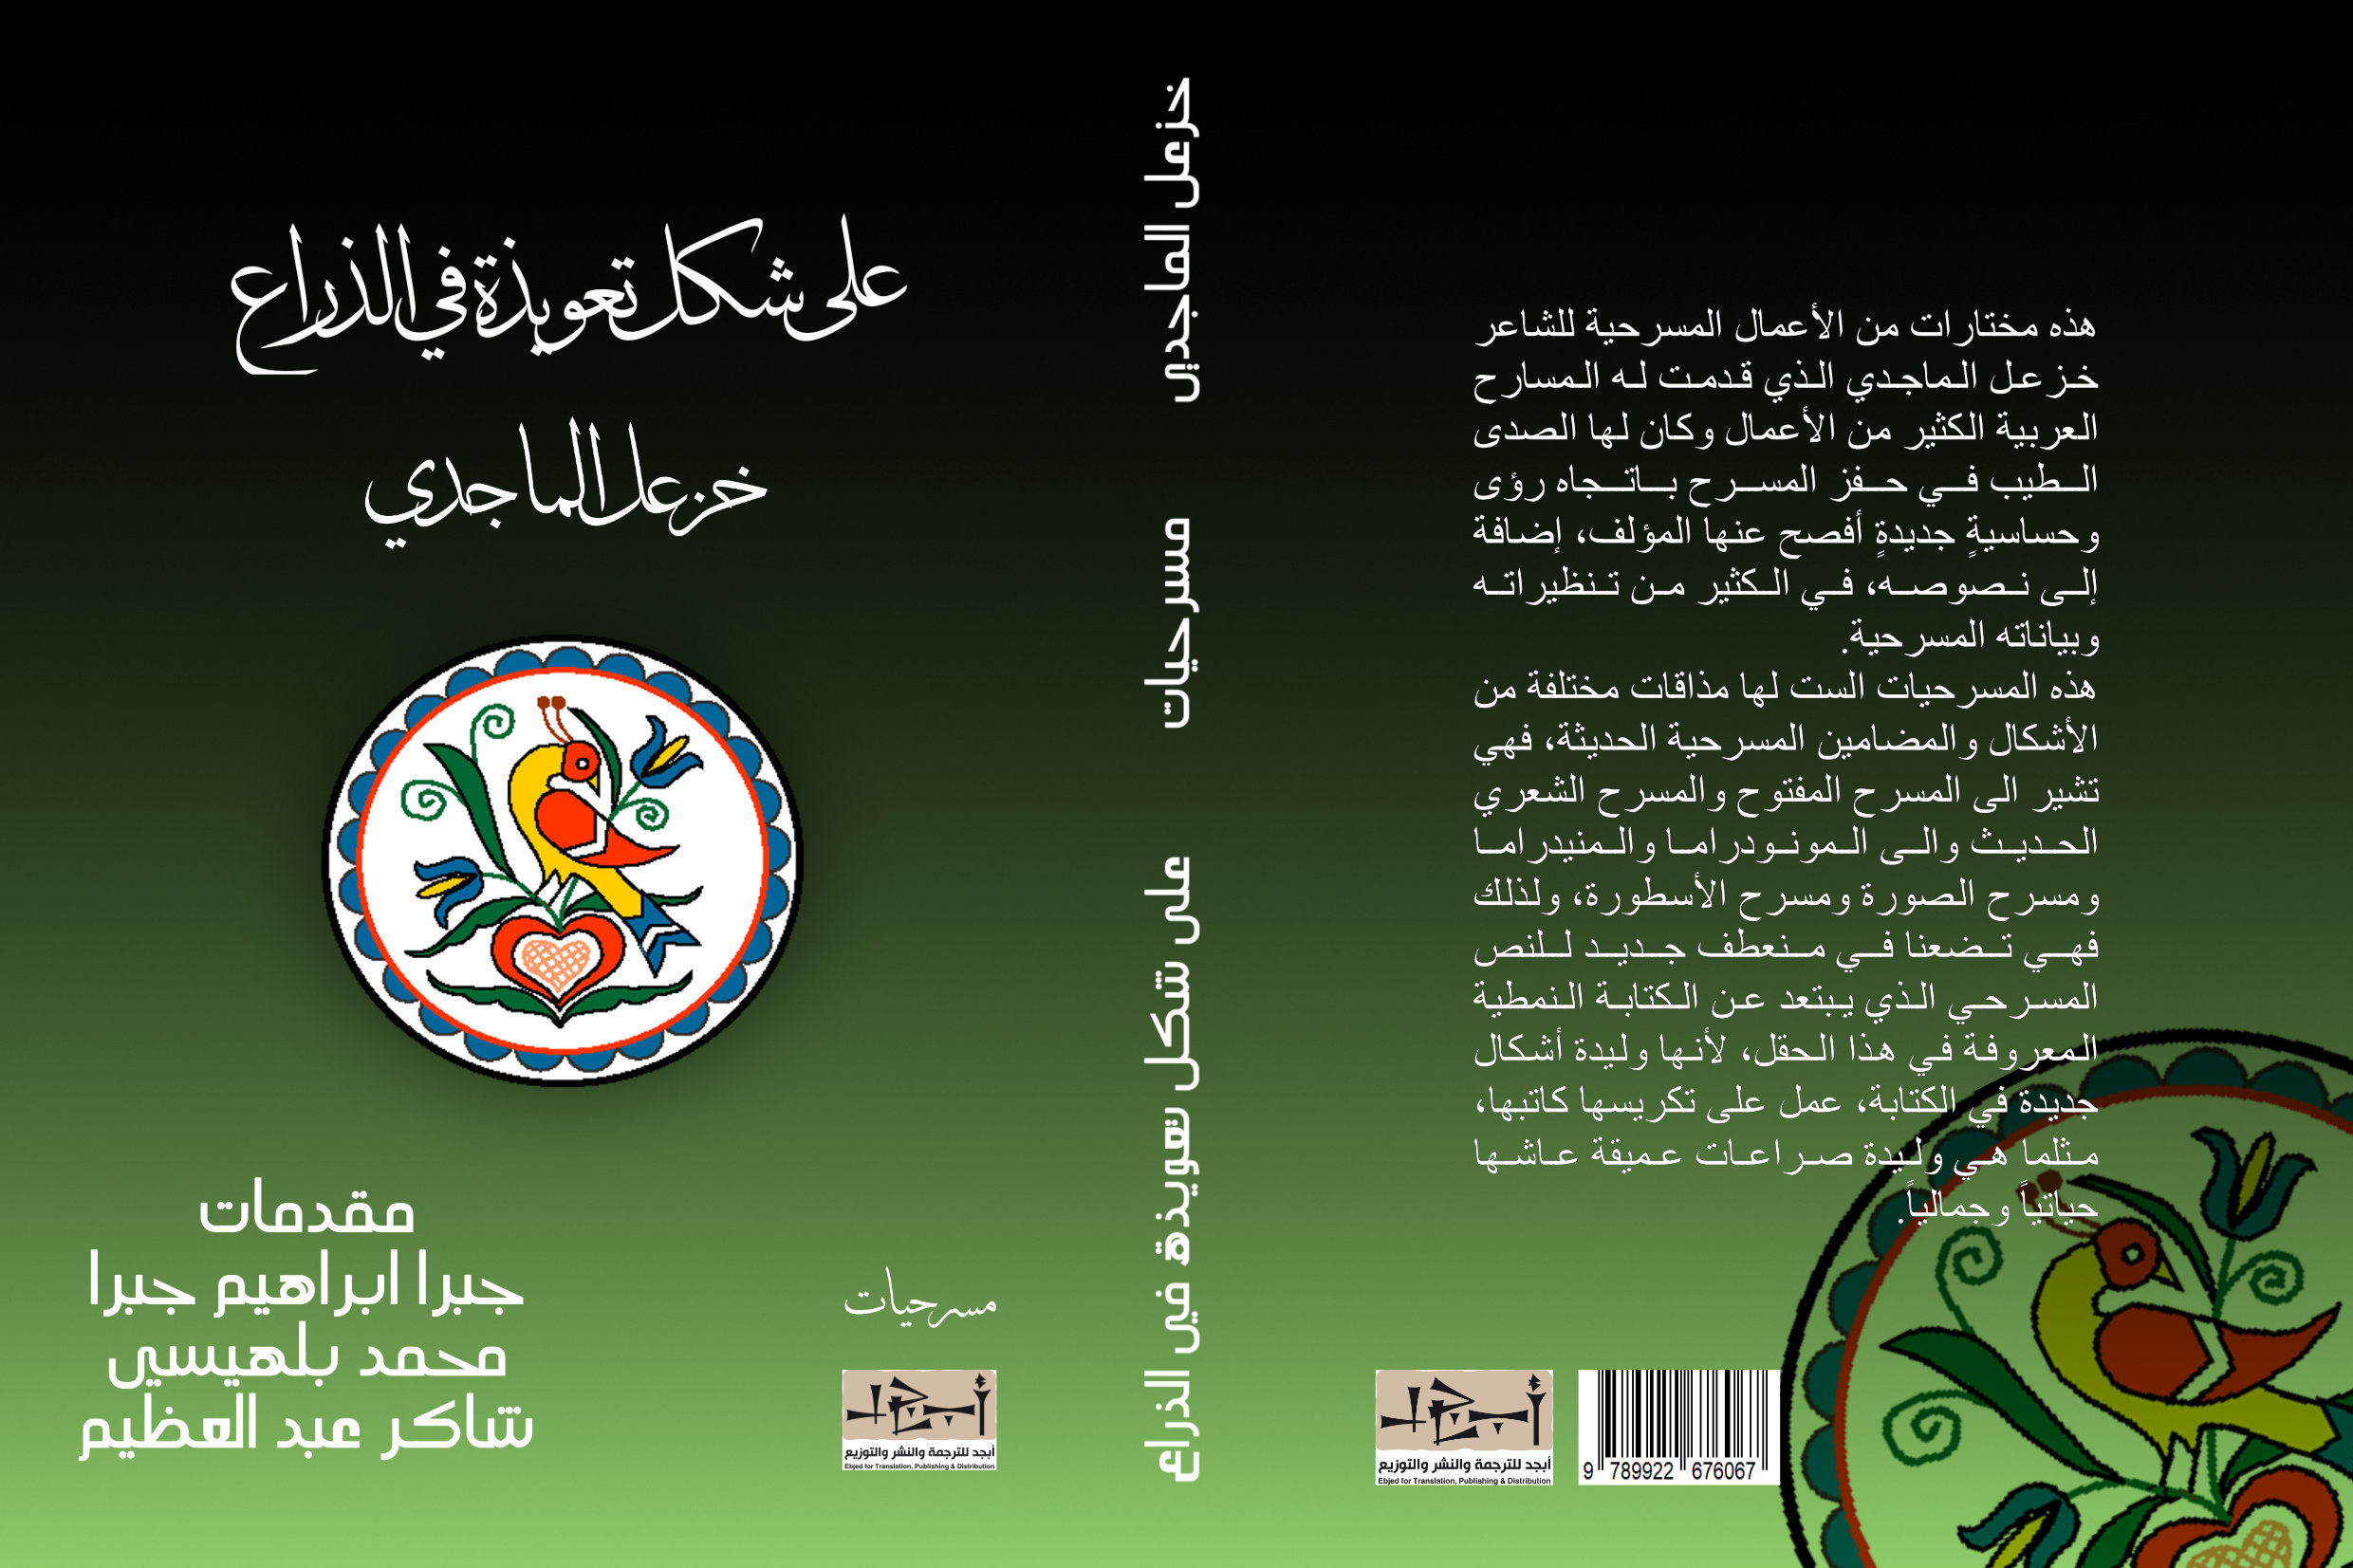 اسم الكتاب: على شكل تعويذة في الذراع – ست مسرحيات تأليف: د. خزعل الماجدي